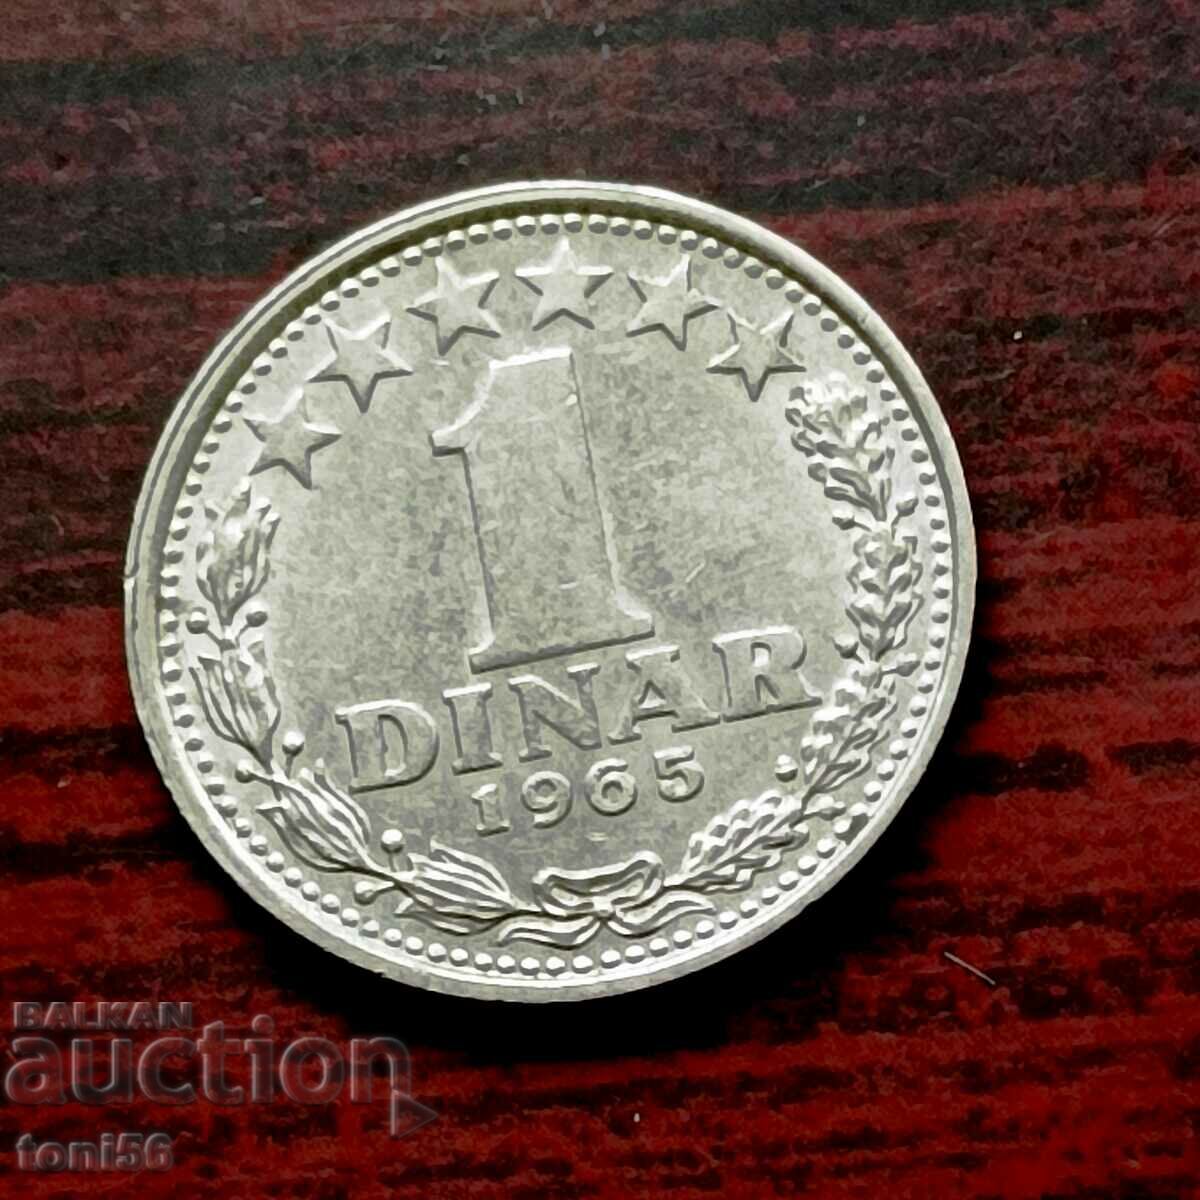 Yugoslavia 1 dinar 1965 UNC